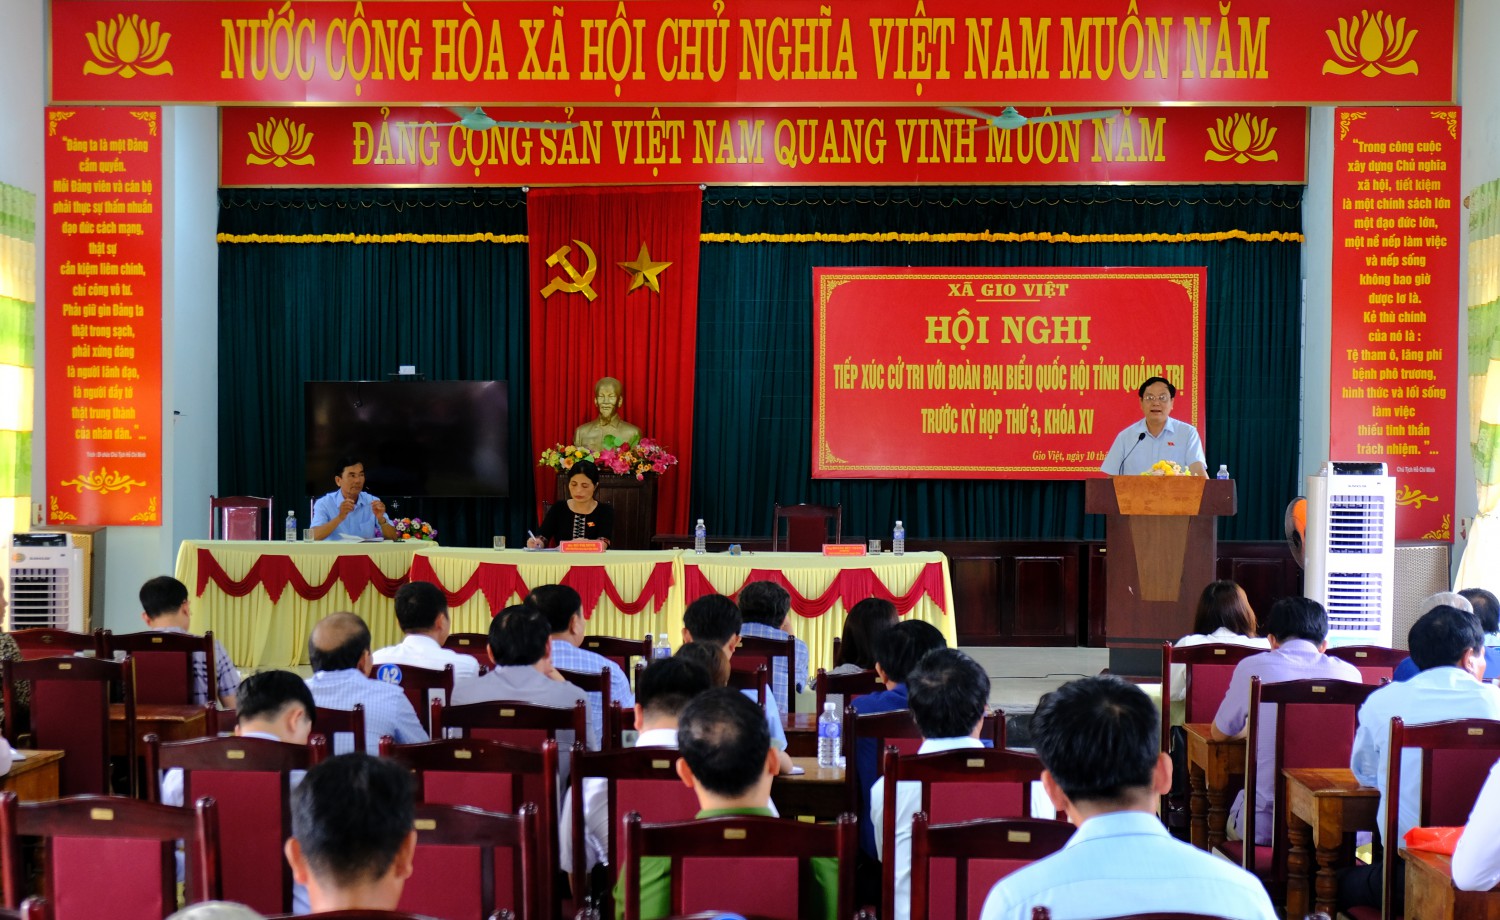 Phó Trưởng đoàn chuyên trách Đoàn ĐBQH tỉnh Hoàng Đức Thắng trao đổi với cử tri tại buổi tiếp xúc - Ảnh: Trần Tuyền